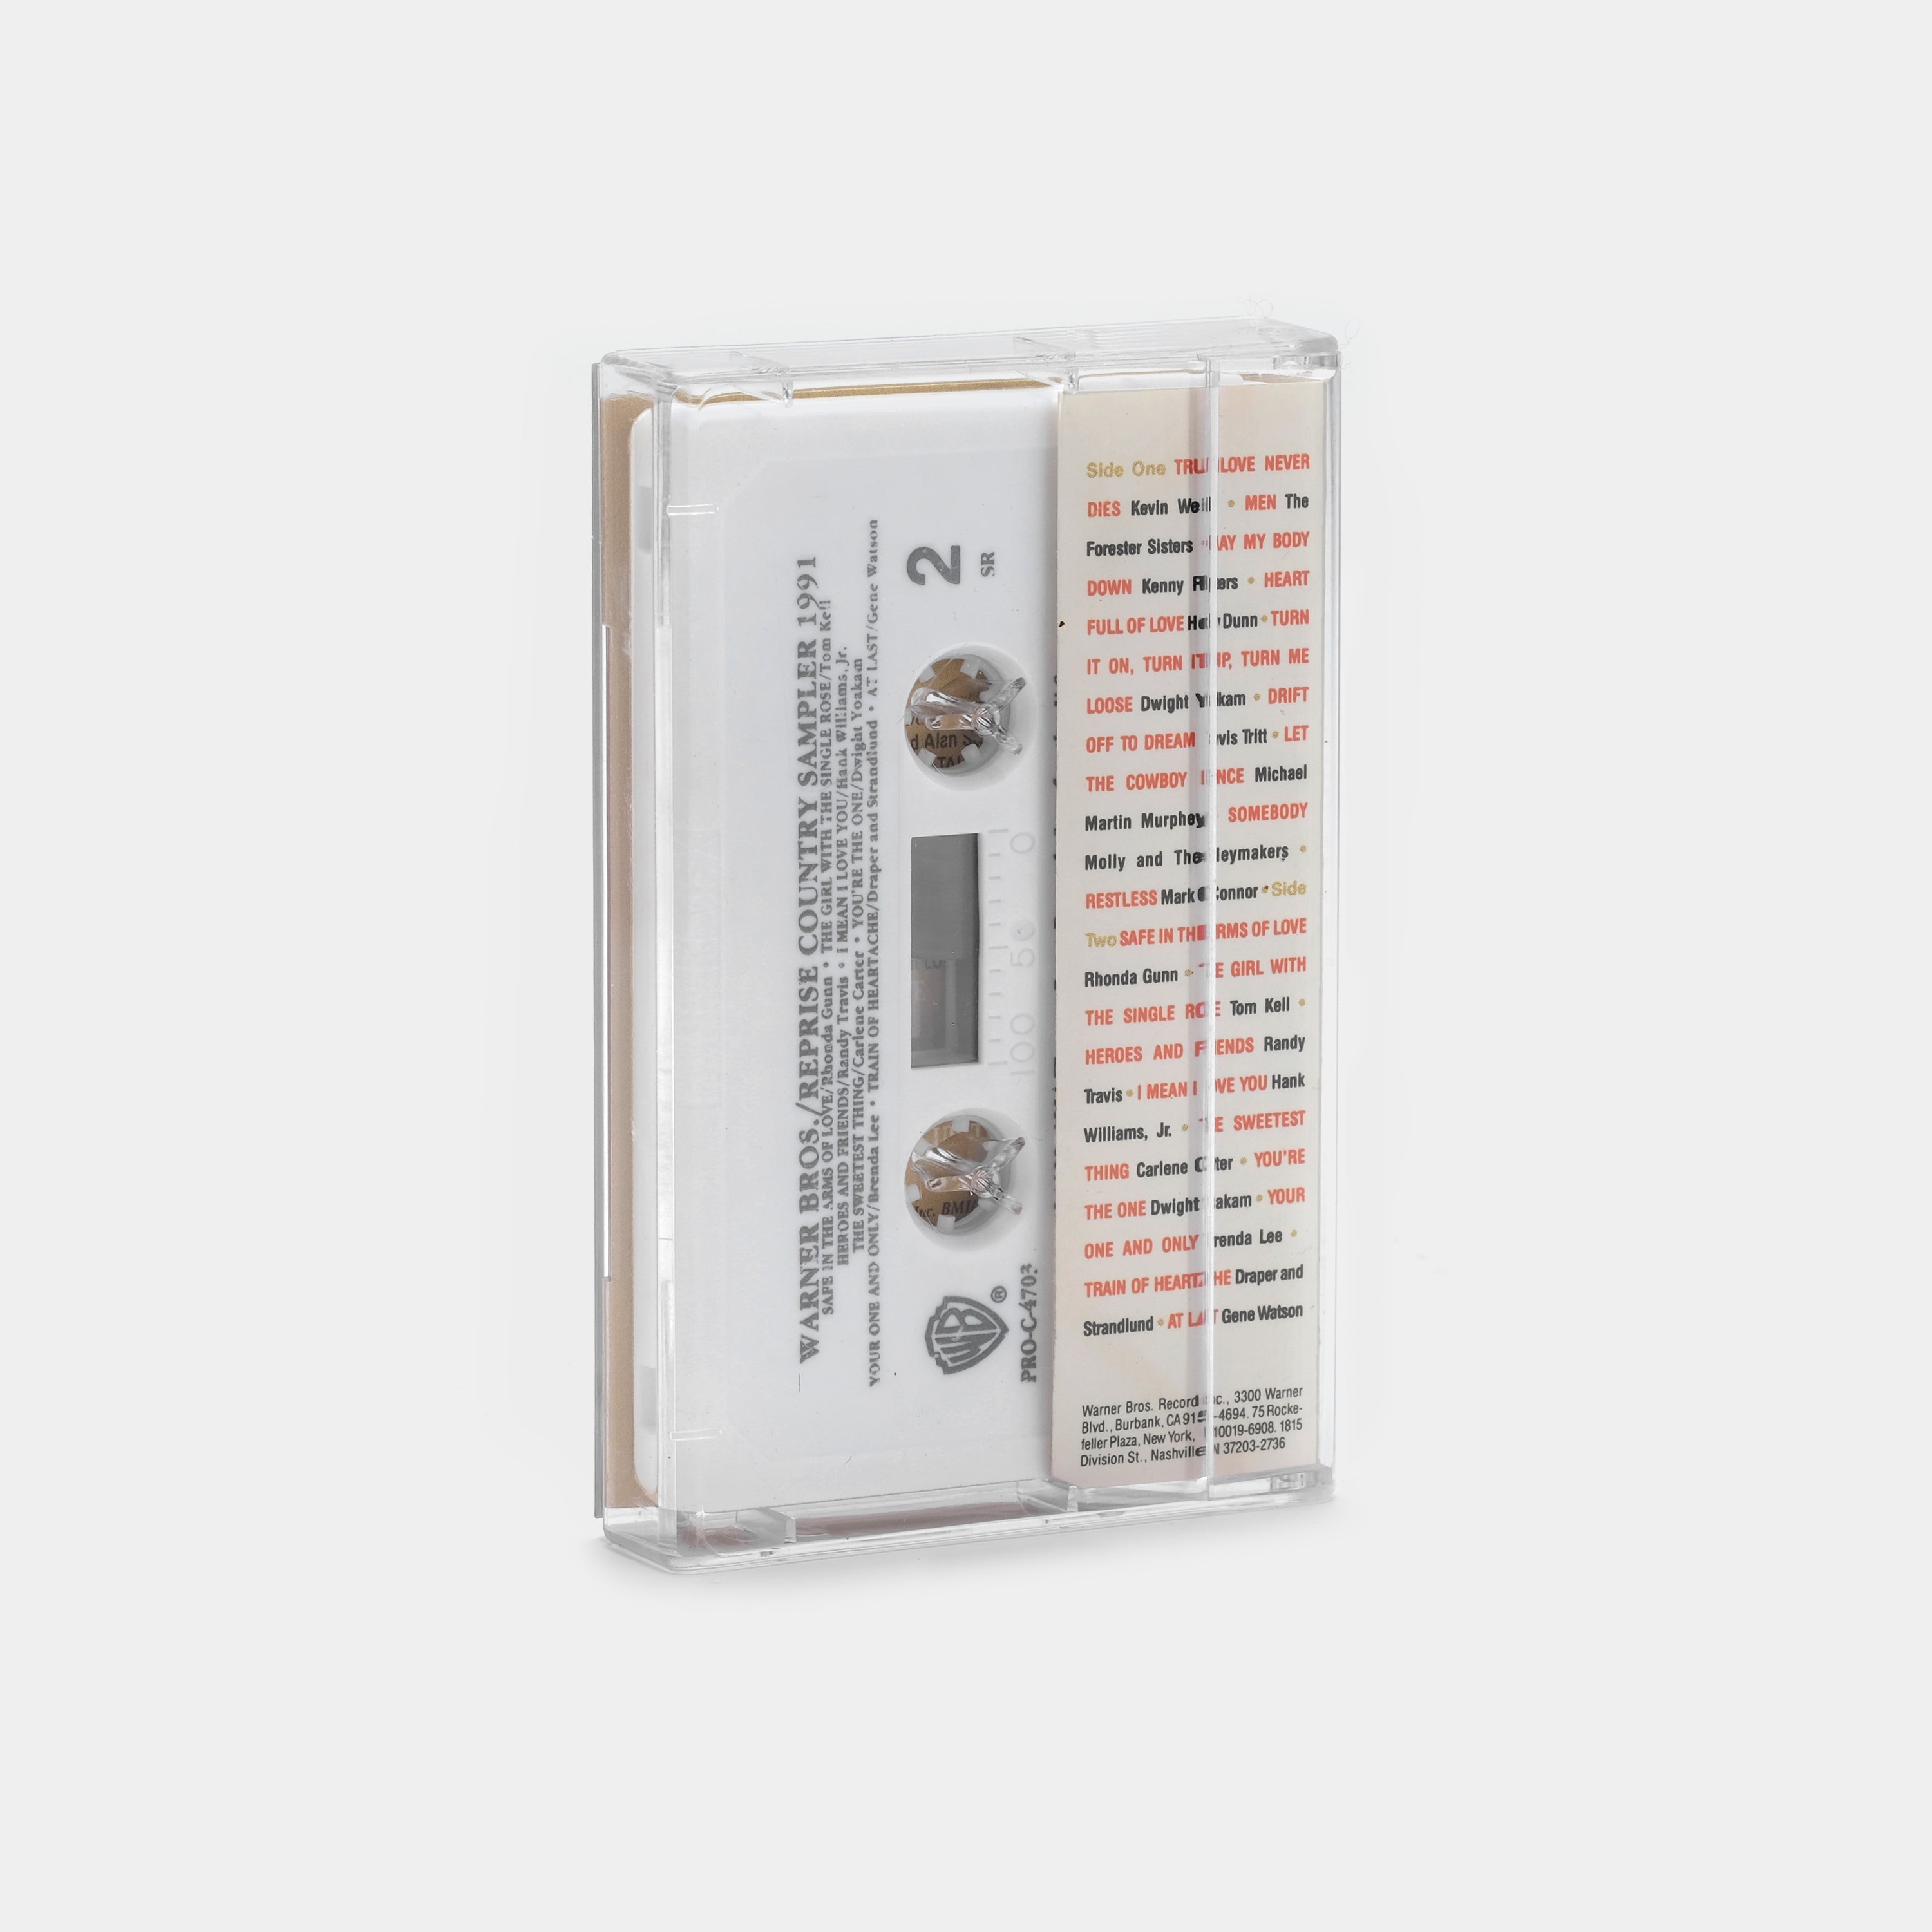 Warner Bros. / Reprise Country Sampler 1991 Cassette Tape